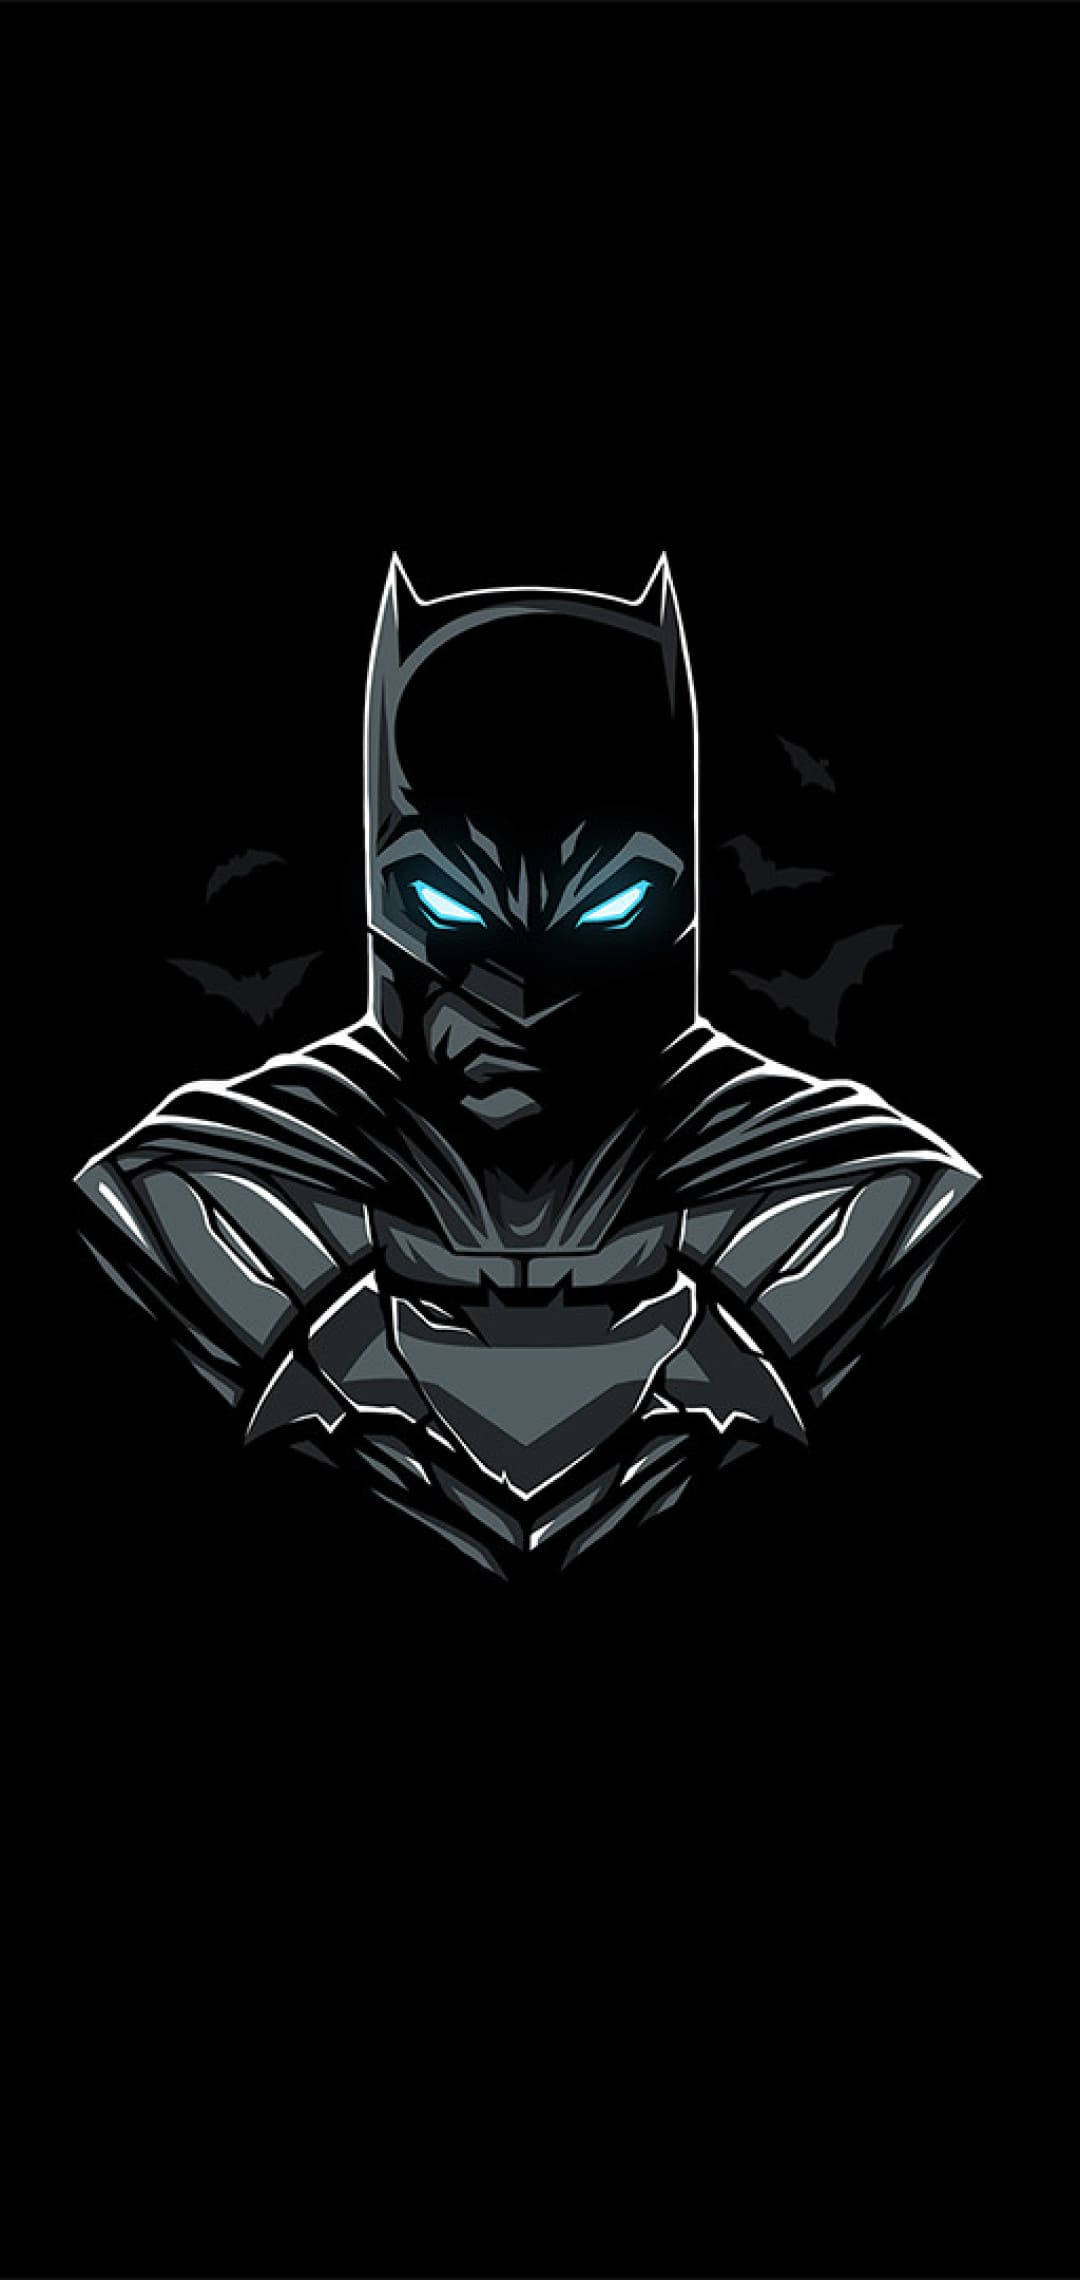 Minimalist Batman Arkham Knight iPhone X tapet. Wallpaper